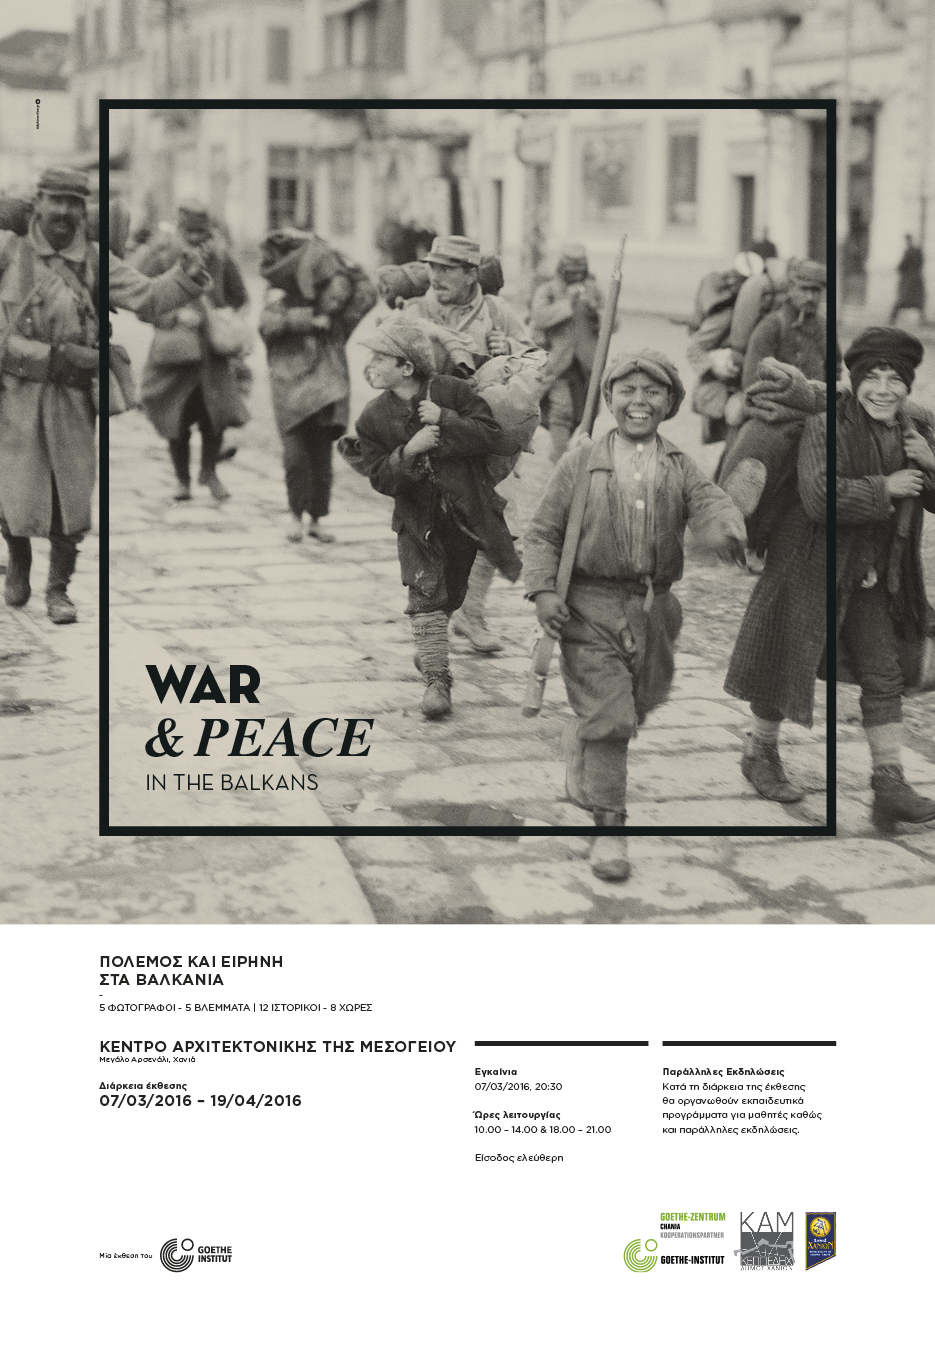 Έκθεση φωτογραφίας “Πόλεμος και Ειρήνη στα Βαλκάνια” στο ΚΑΜ